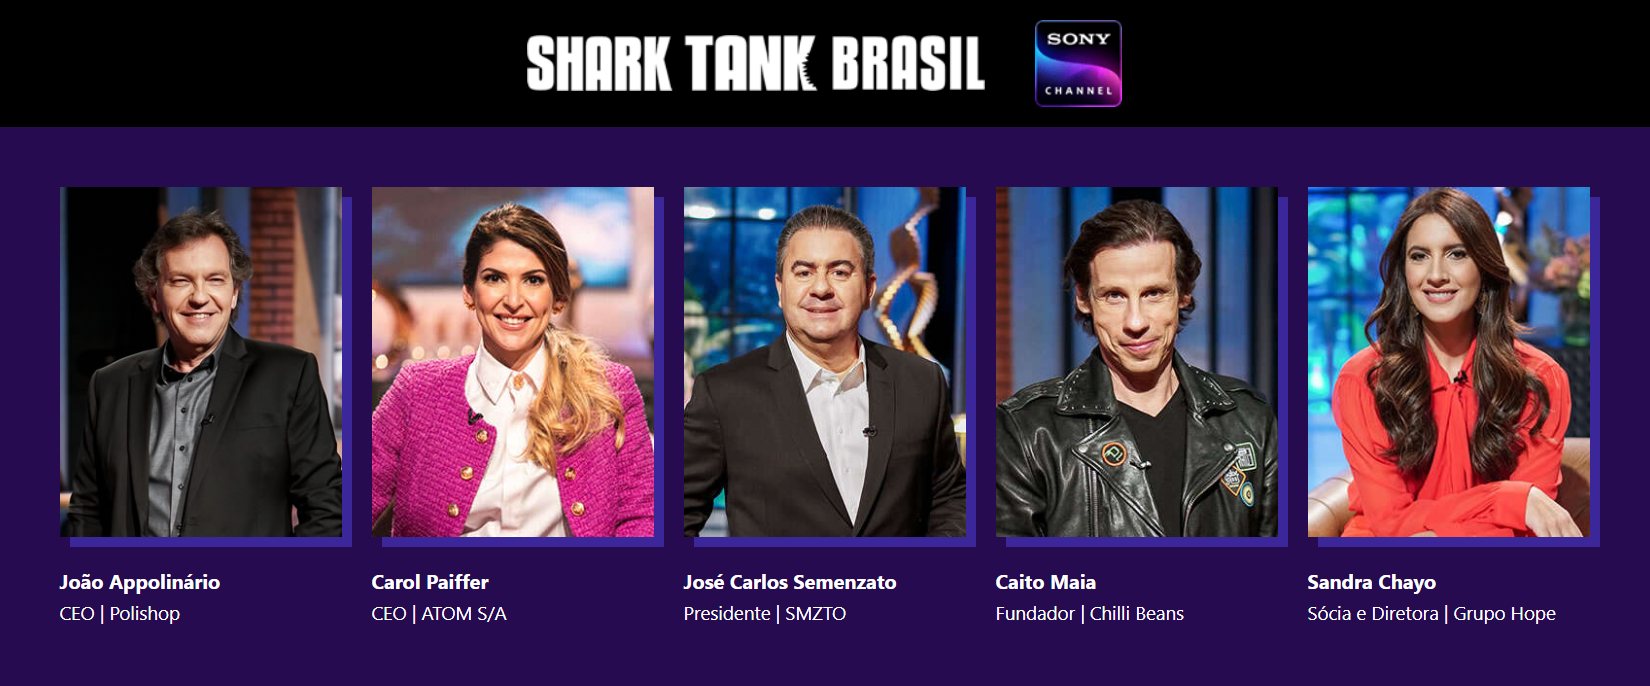 Quem é o mais rico do Shark Tank Brasil? Descubra agora!